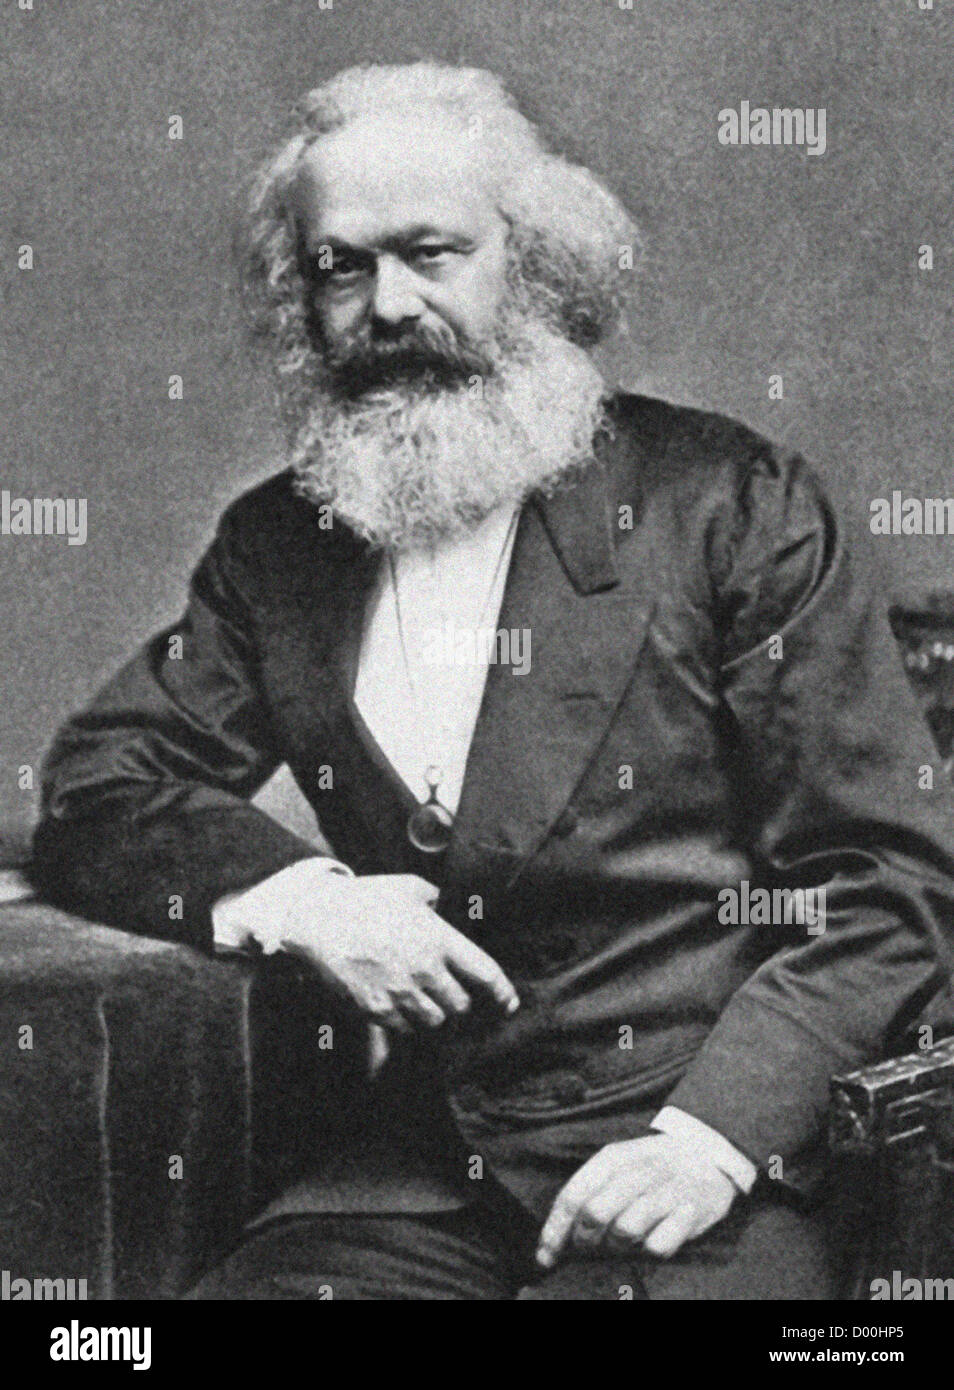 Karl Heinrich Marx war ein deutscher Philosoph, Ökonom, Soziologe, Historiker, Journalist und revolutionär sozialistischen. Aus dem Archiv des Pressedienstes Portrait, ehemals Portrait Pressebüro. Stockfoto